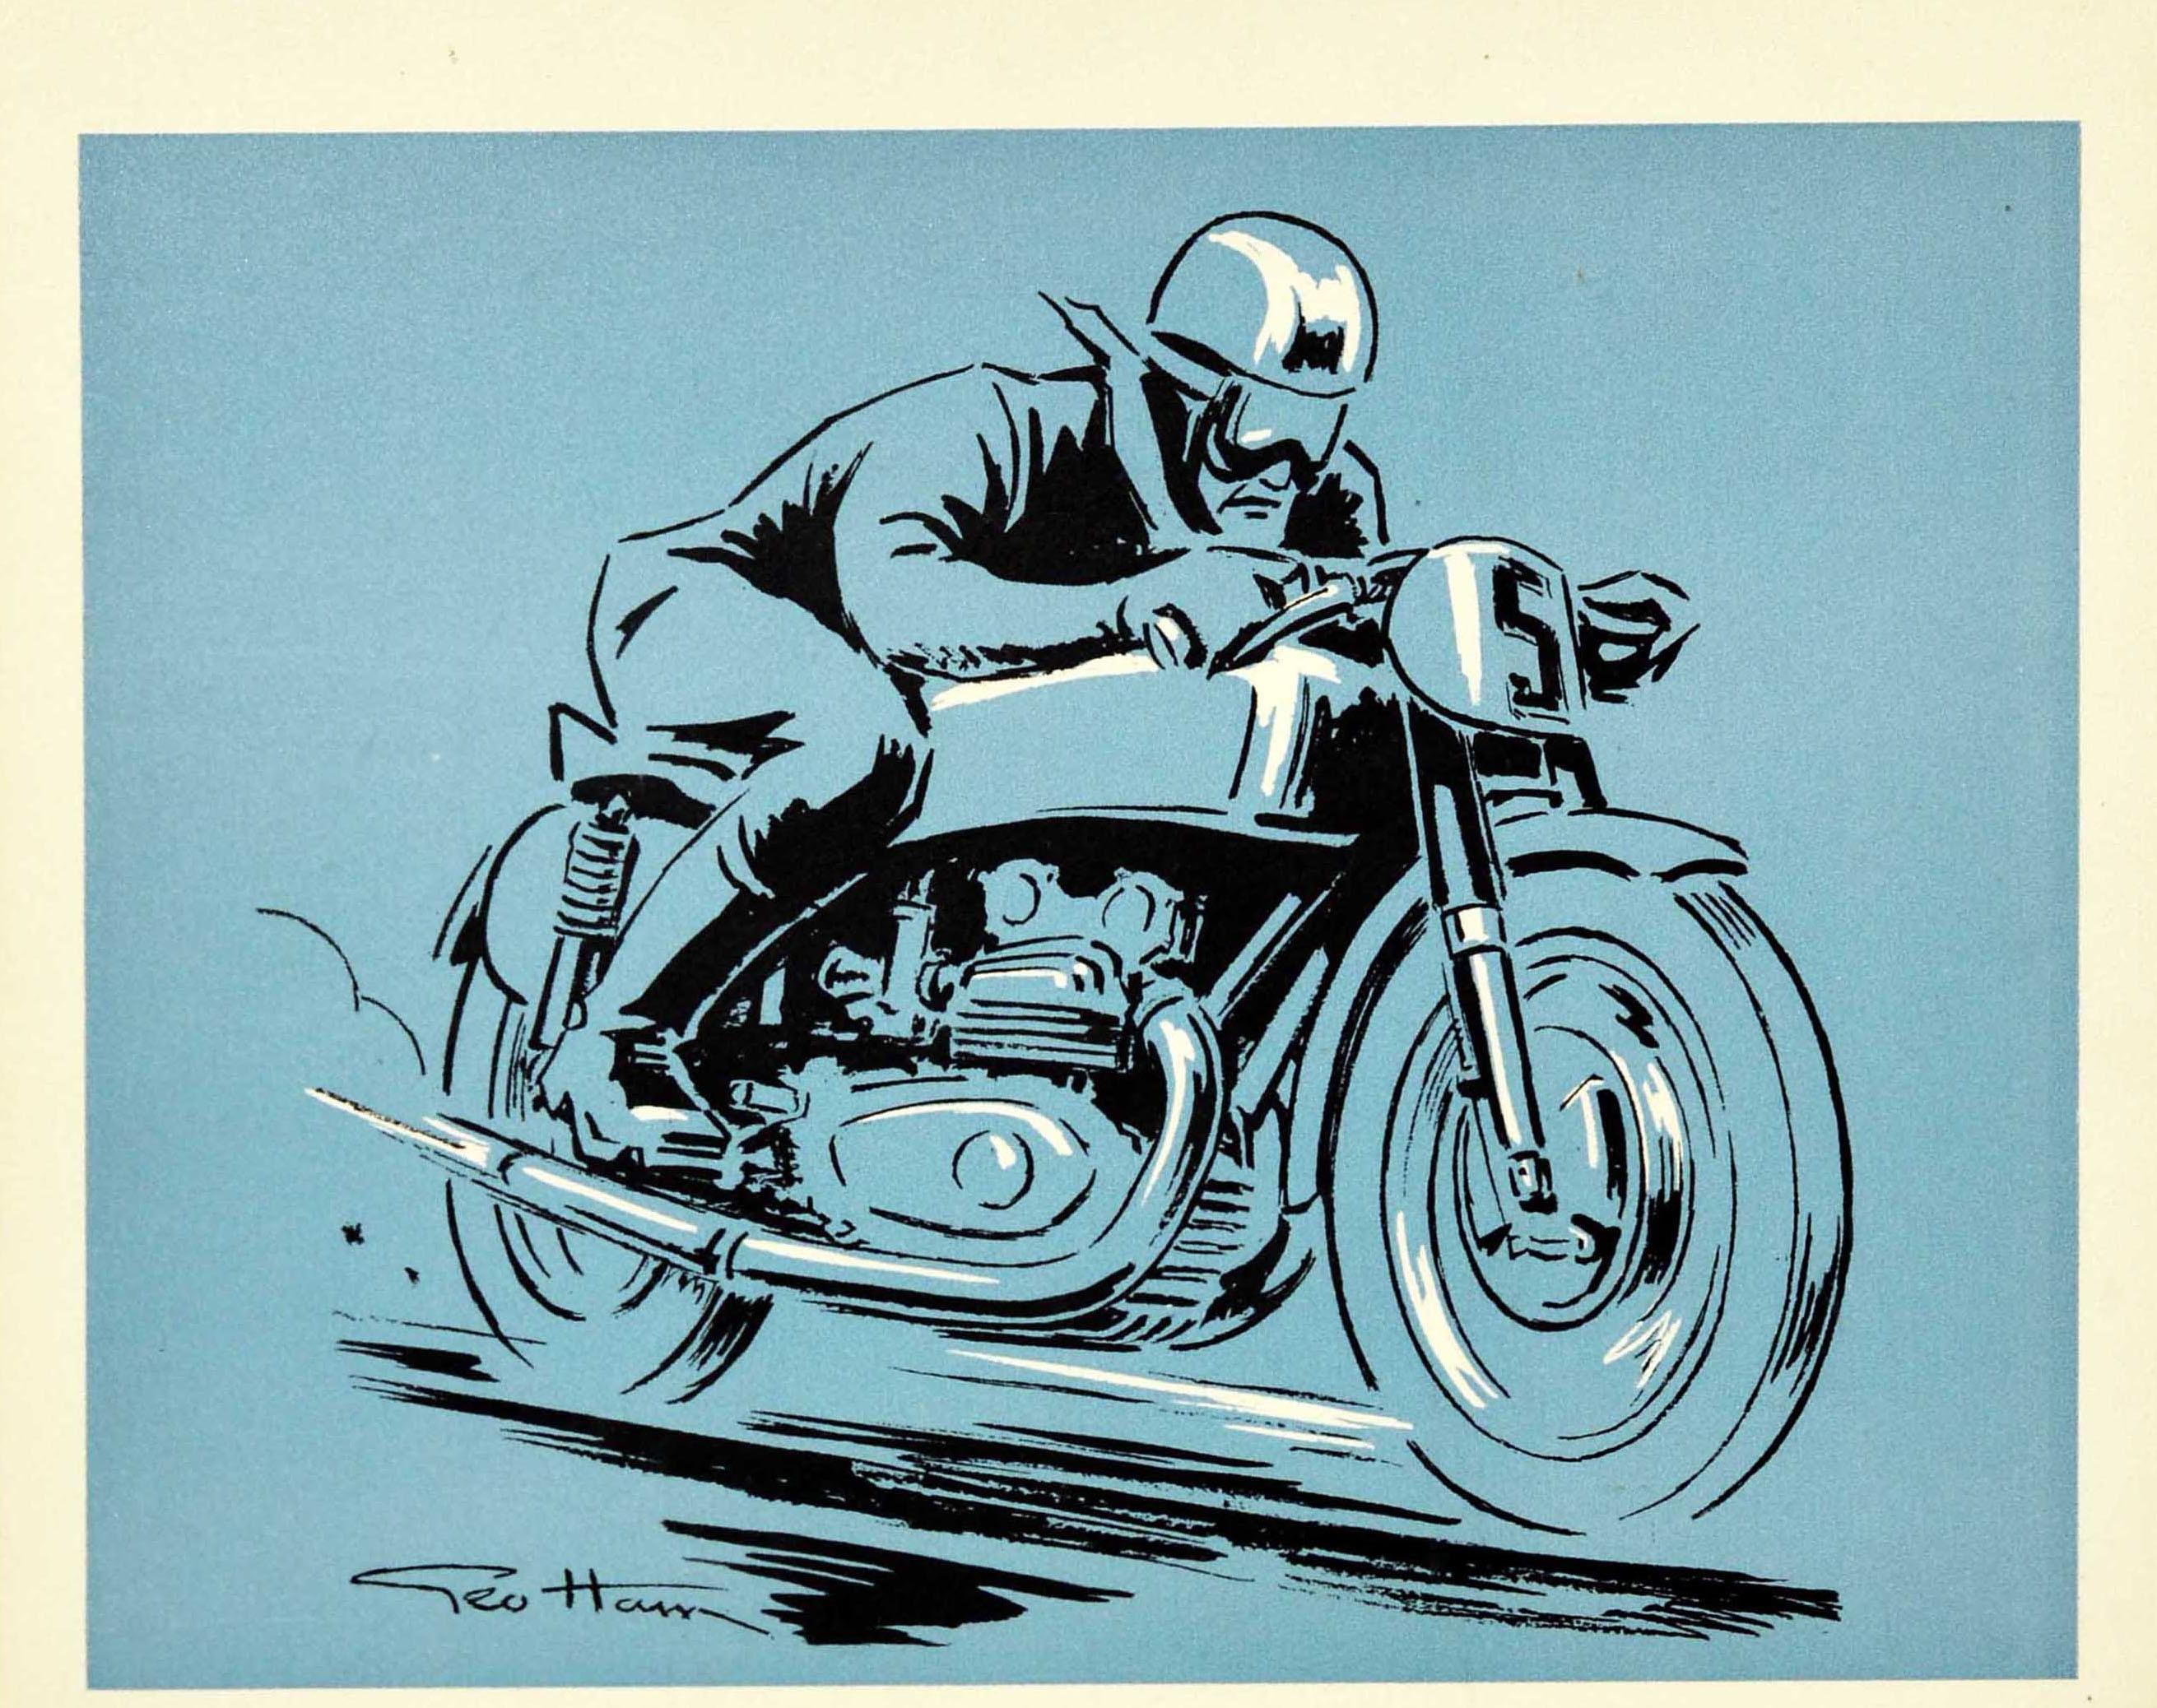 Originalplakat für ein Motorsportdiplom - Motocycle Club de France Diplome Decerne MCF - mit einer dynamischen Illustration von Geo Ham (Georges Hamel; 1900-1972), die einen Motorradfahrer mit Helm und Brille zeigt, der mit hoher Geschwindigkeit ein